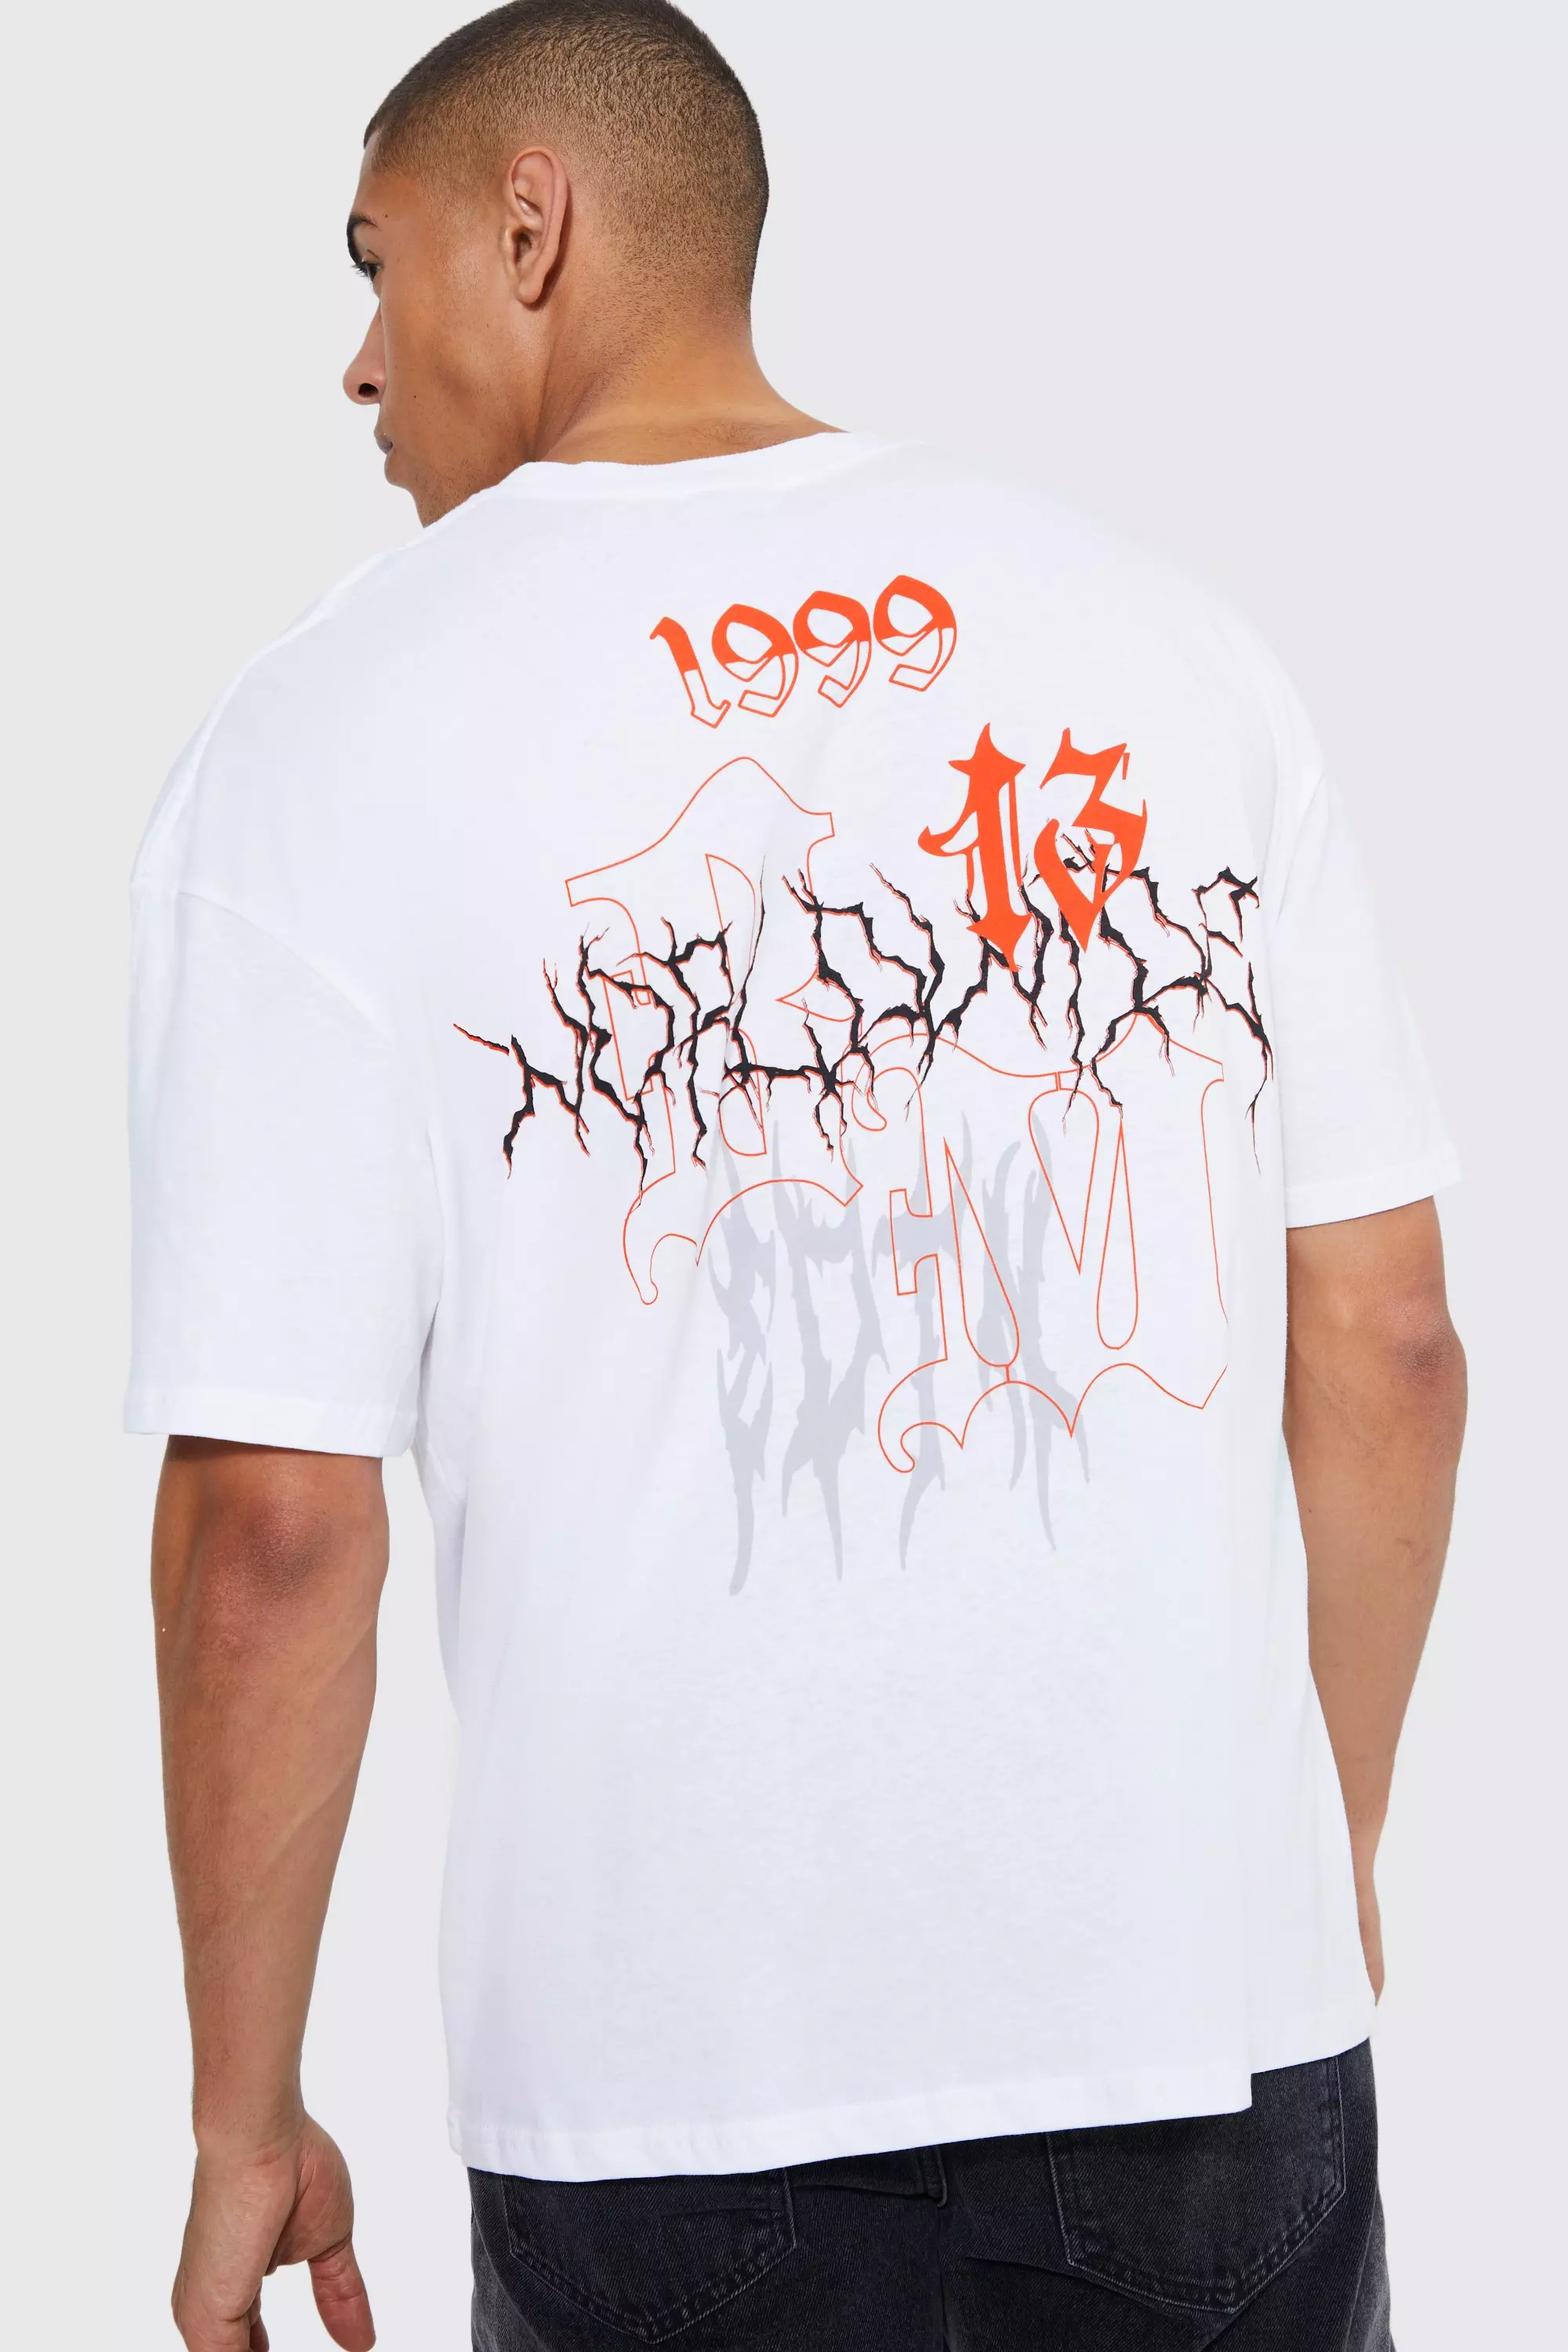 Boohoo Man Mens Black Oversized Extended Neck Graffiti T Shirt & Shorts Set  Sz L